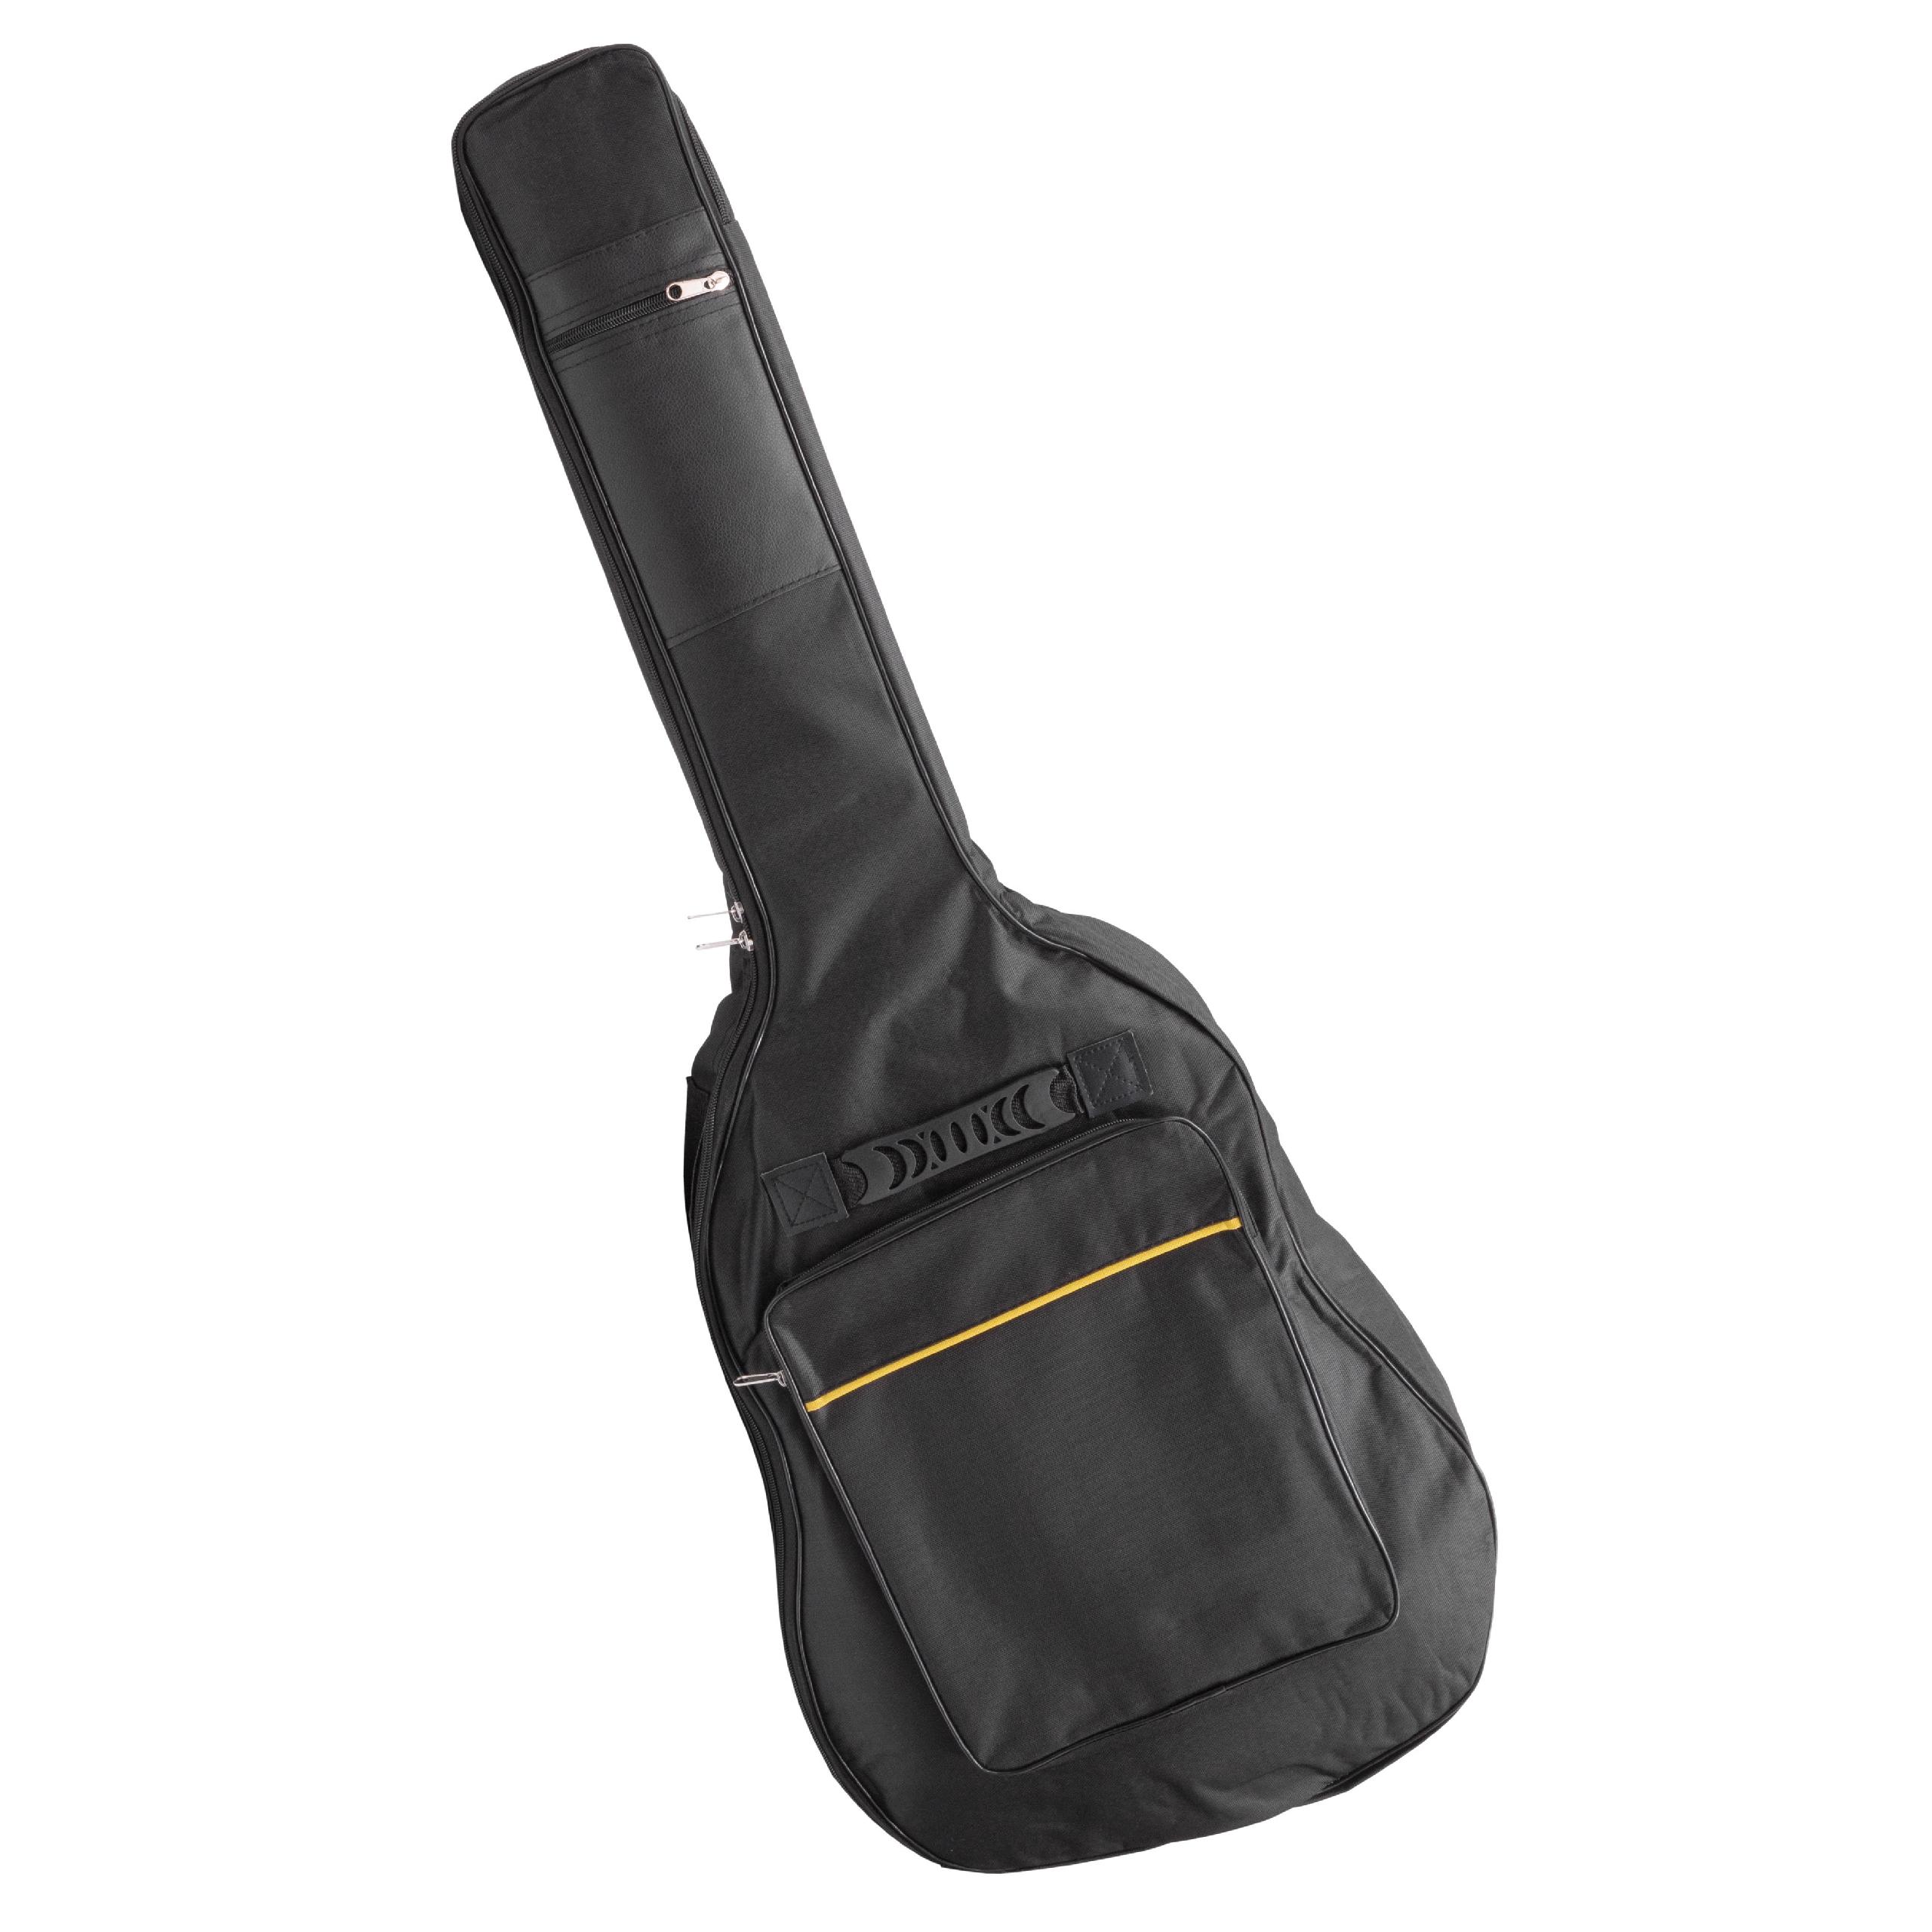 vhbw Gitarrentasche Rucksack Case für E-Gitarre z.B. kompatibel mit Ibanez, Yamaha - gepolstert, ergonomisch, 